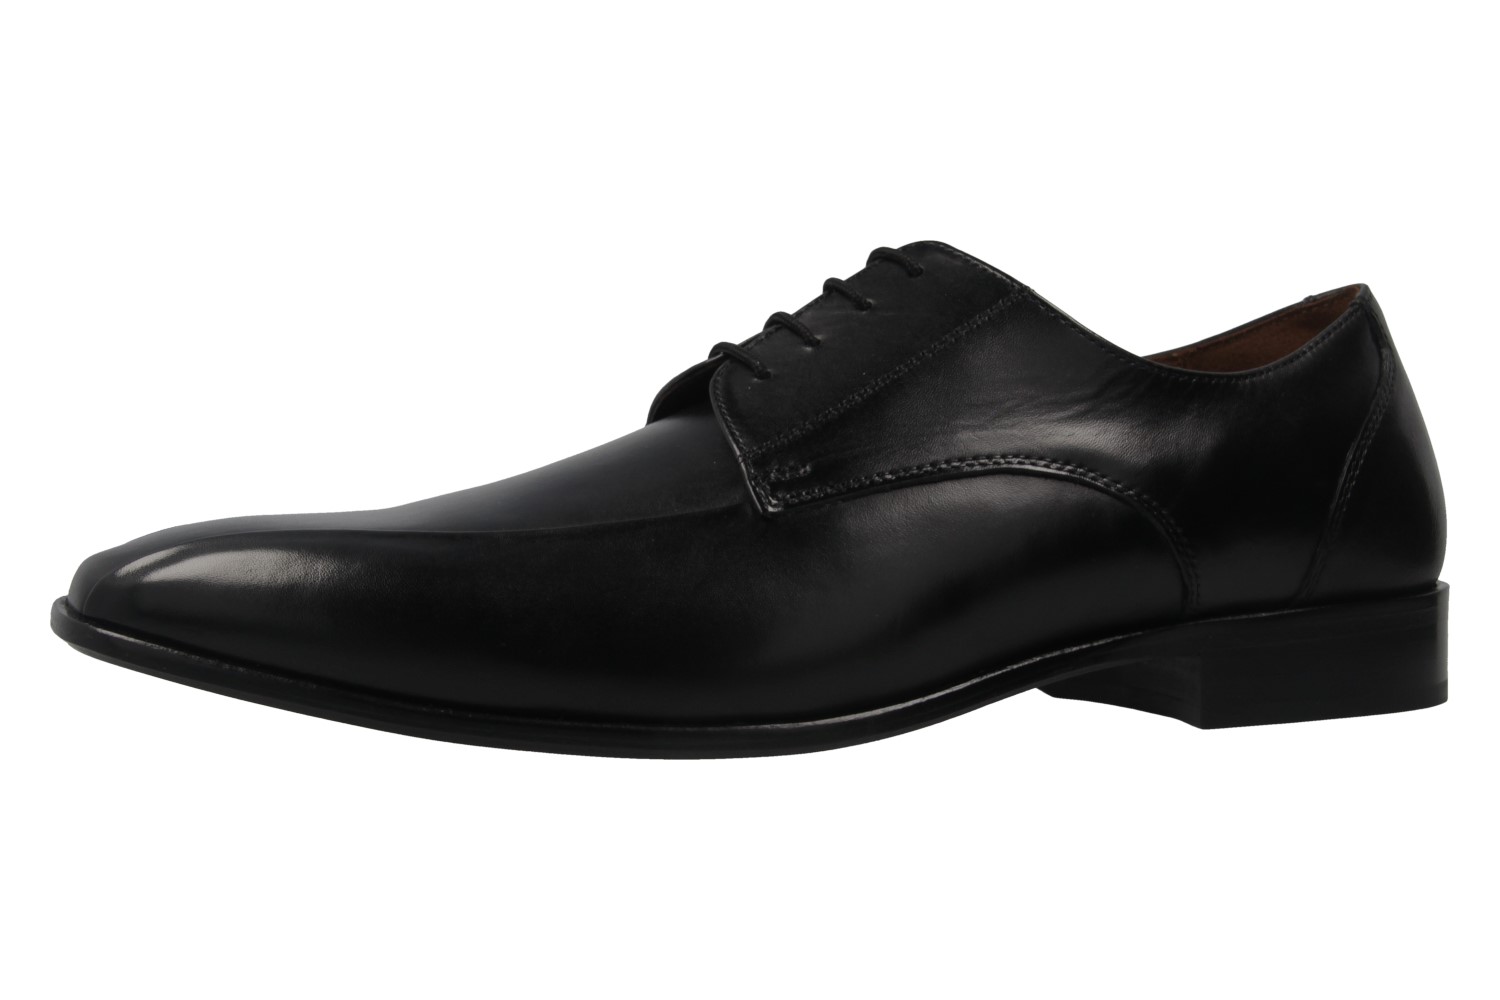 Manz Grandada AGO Business-Schuhe in Übergrößen Schwarz 116005-03-001 große Herrenschuhe